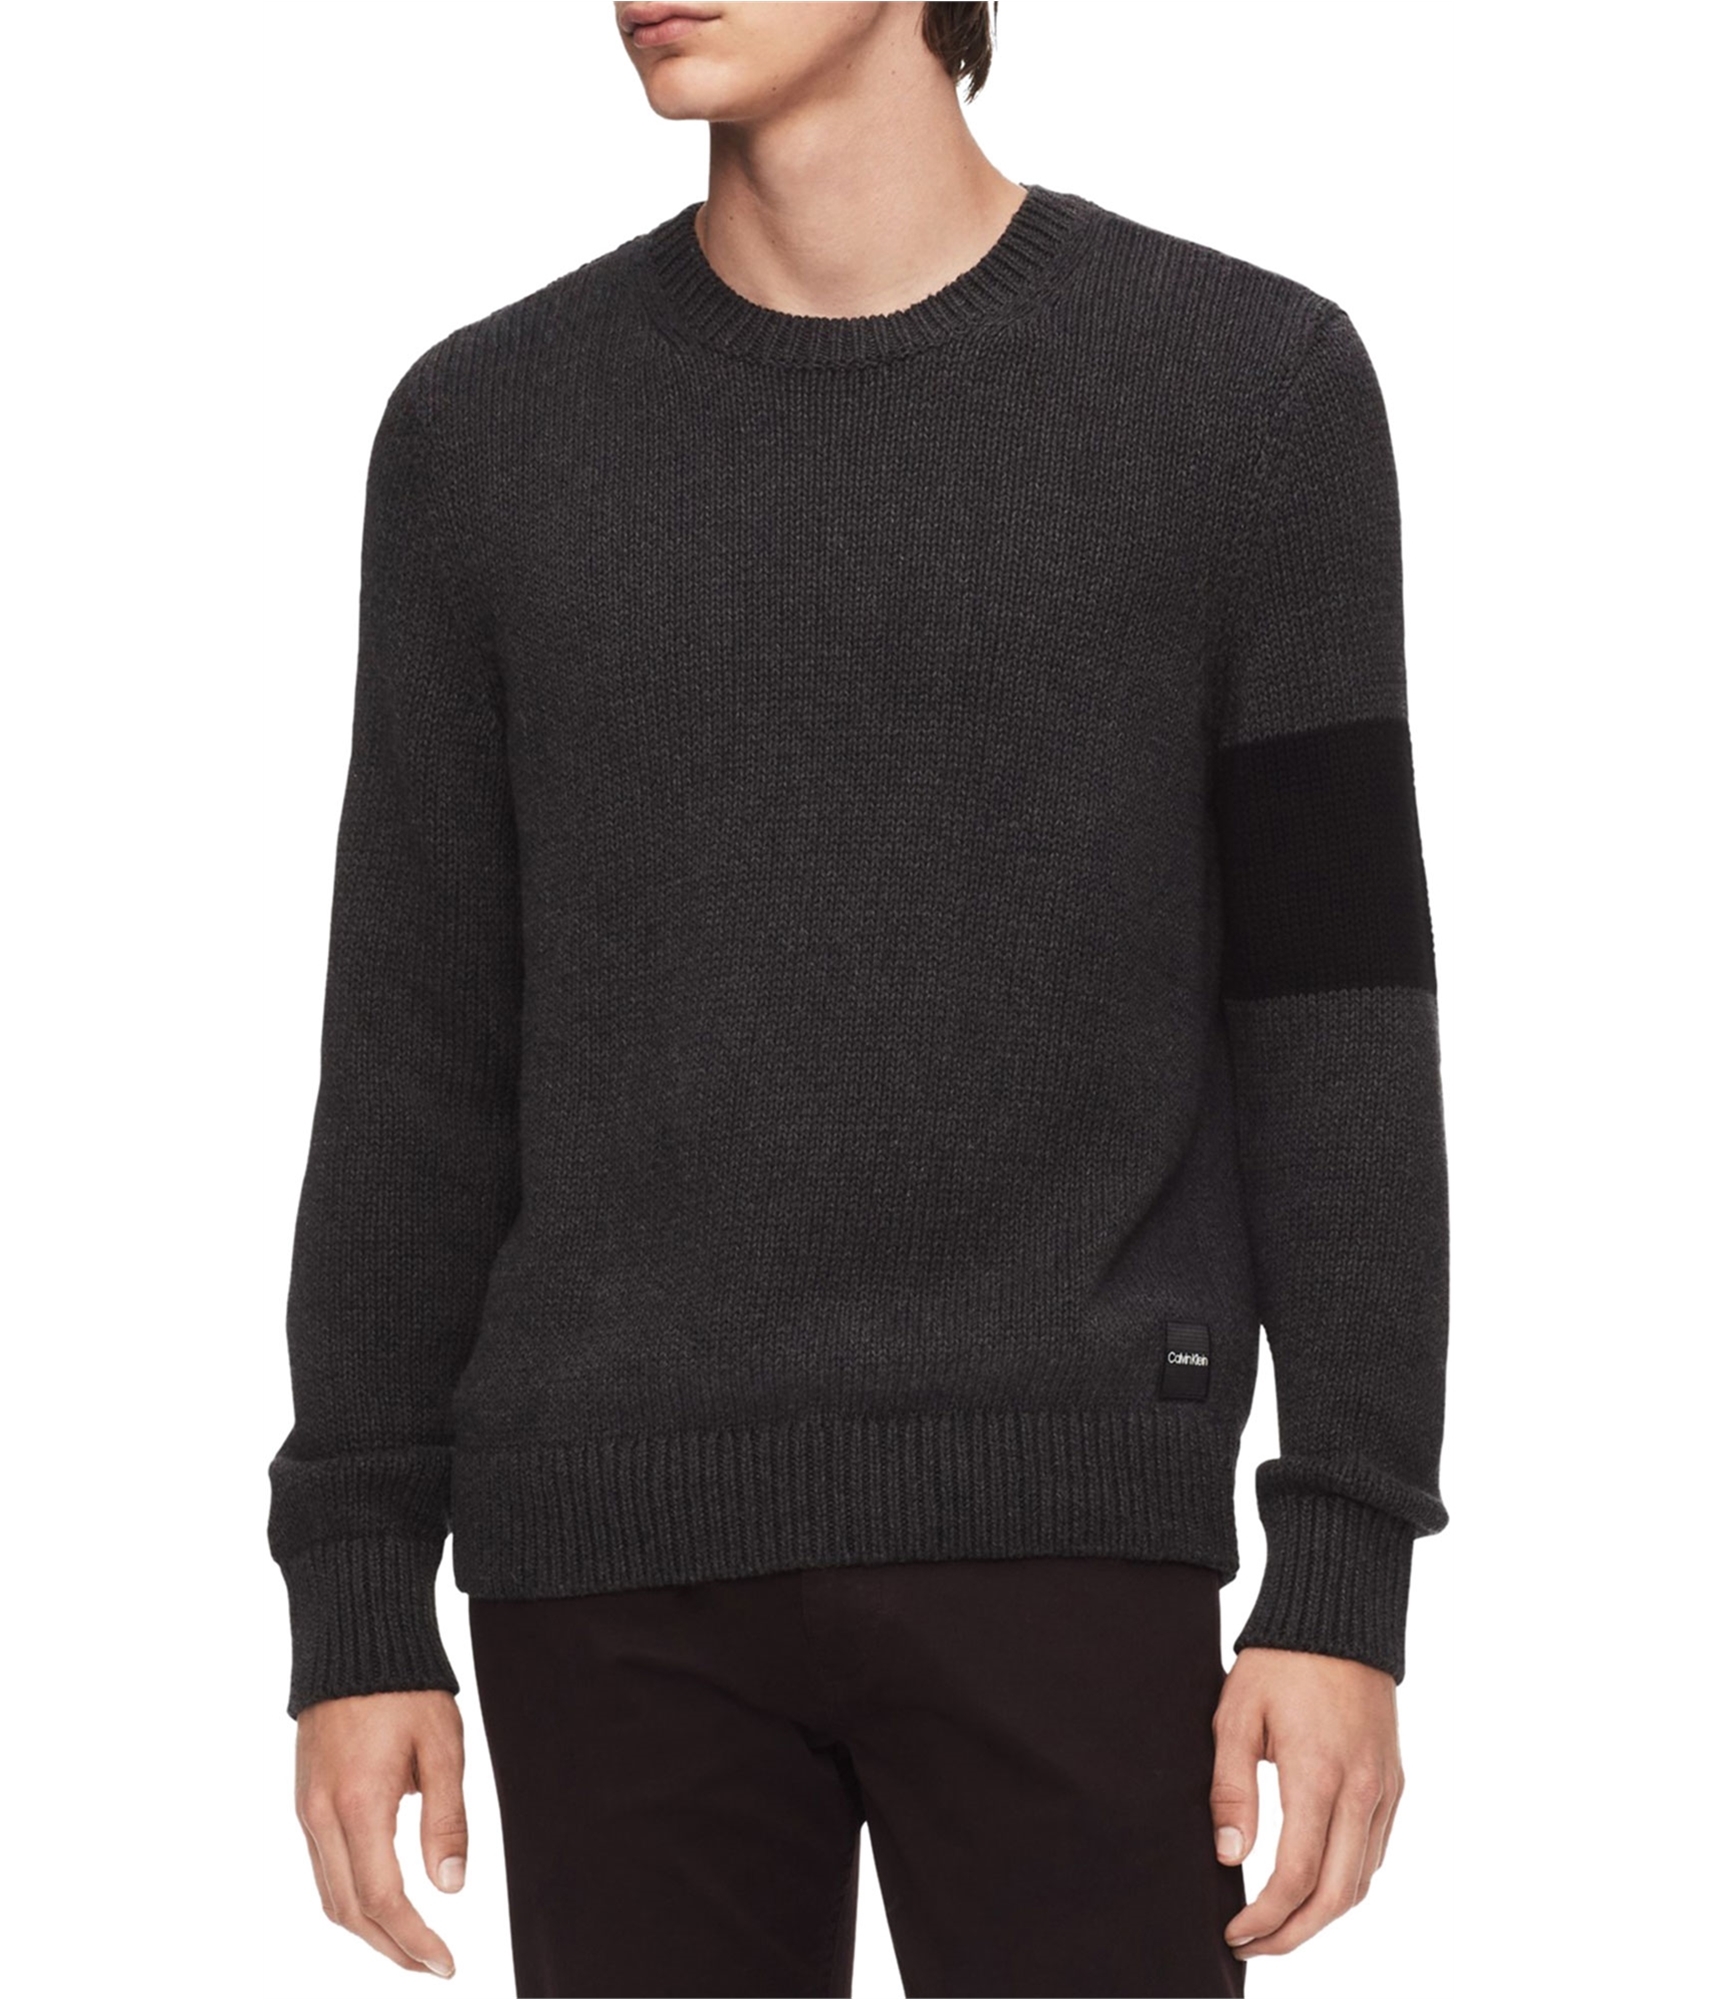 Memoriseren Bondgenoot bedelaar Buy a Mens Calvin Klein Colorblocked Pullover Sweater Online |  TagsWeekly.com, TW1